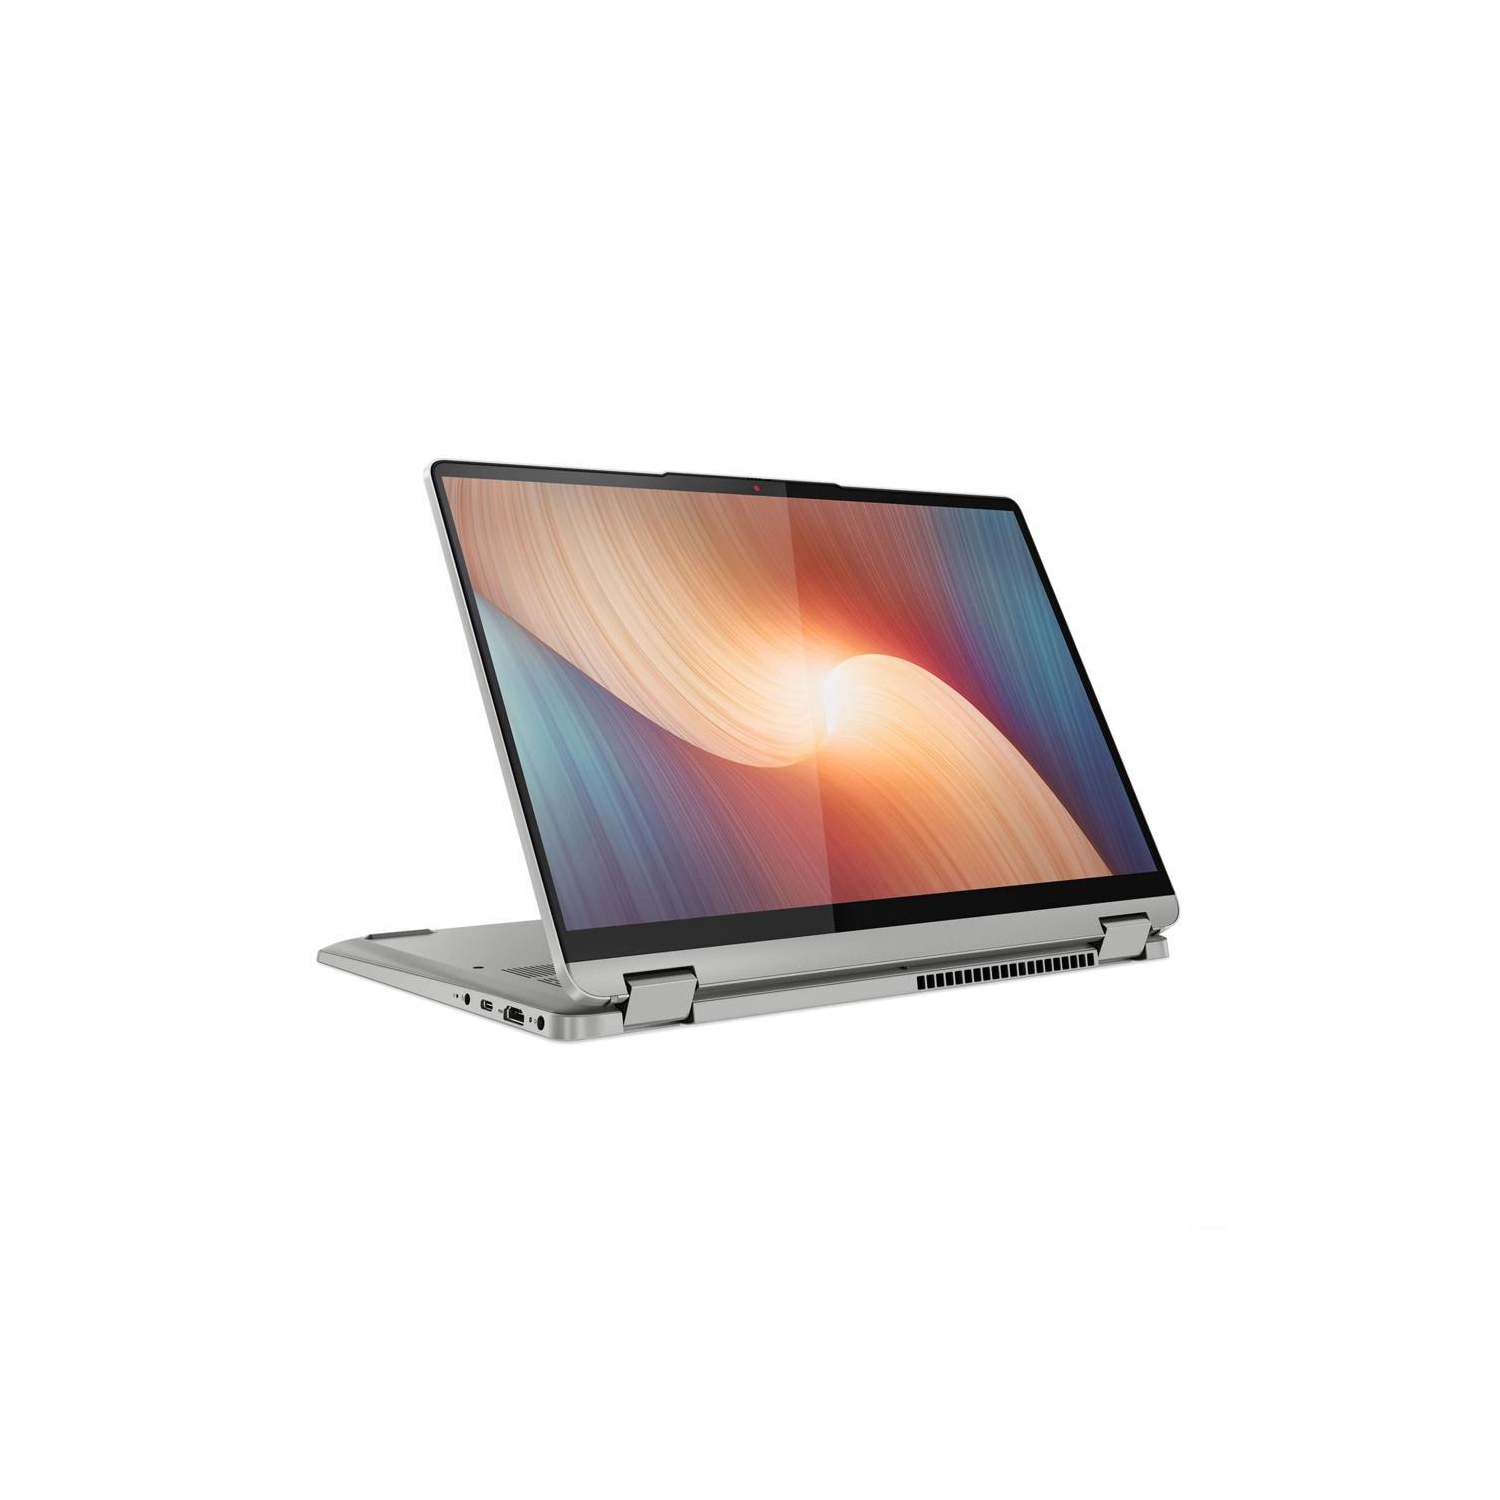 Refurbished (Excellent) - Lenovo IdeaPad Flex 5 Laptop (AMD Ryzen 5 5500U, 8GB Ram, 512GB SSD, HDMI, Webcam, Windows 11, 14" touchscreen) - Cloud Grey